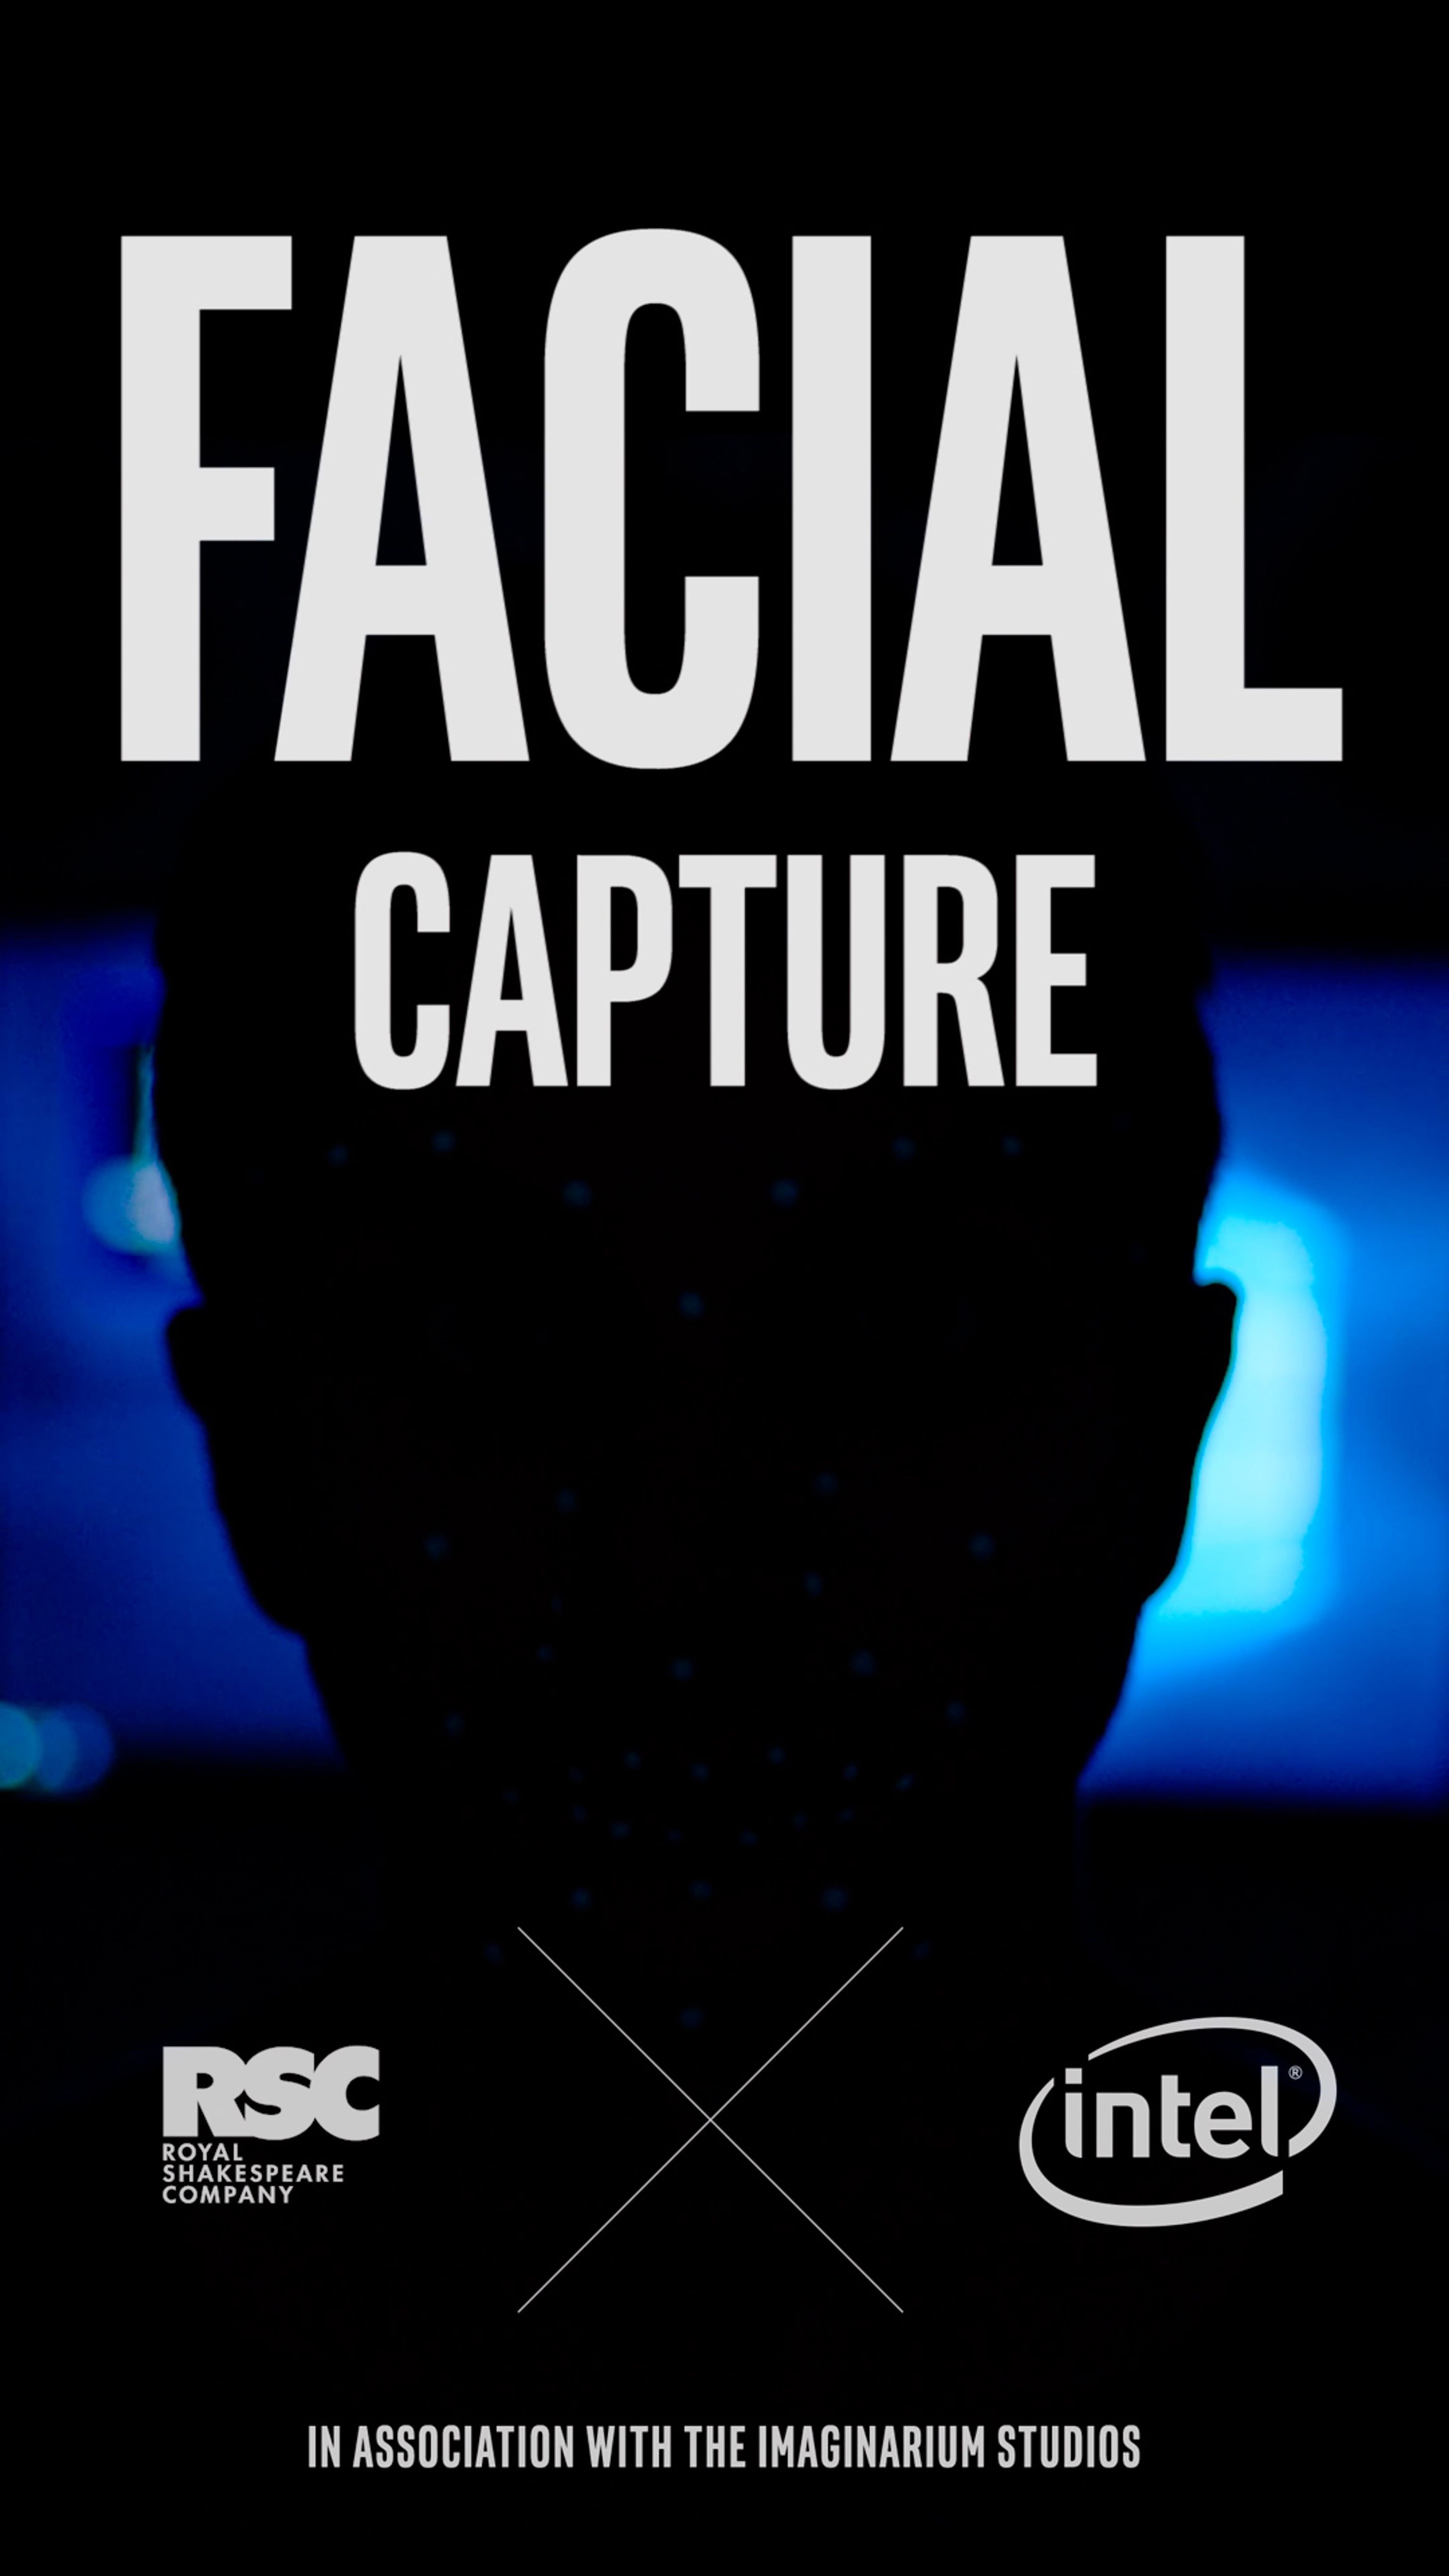 Intel_RSC_The Tempest - Facial Capture - Social